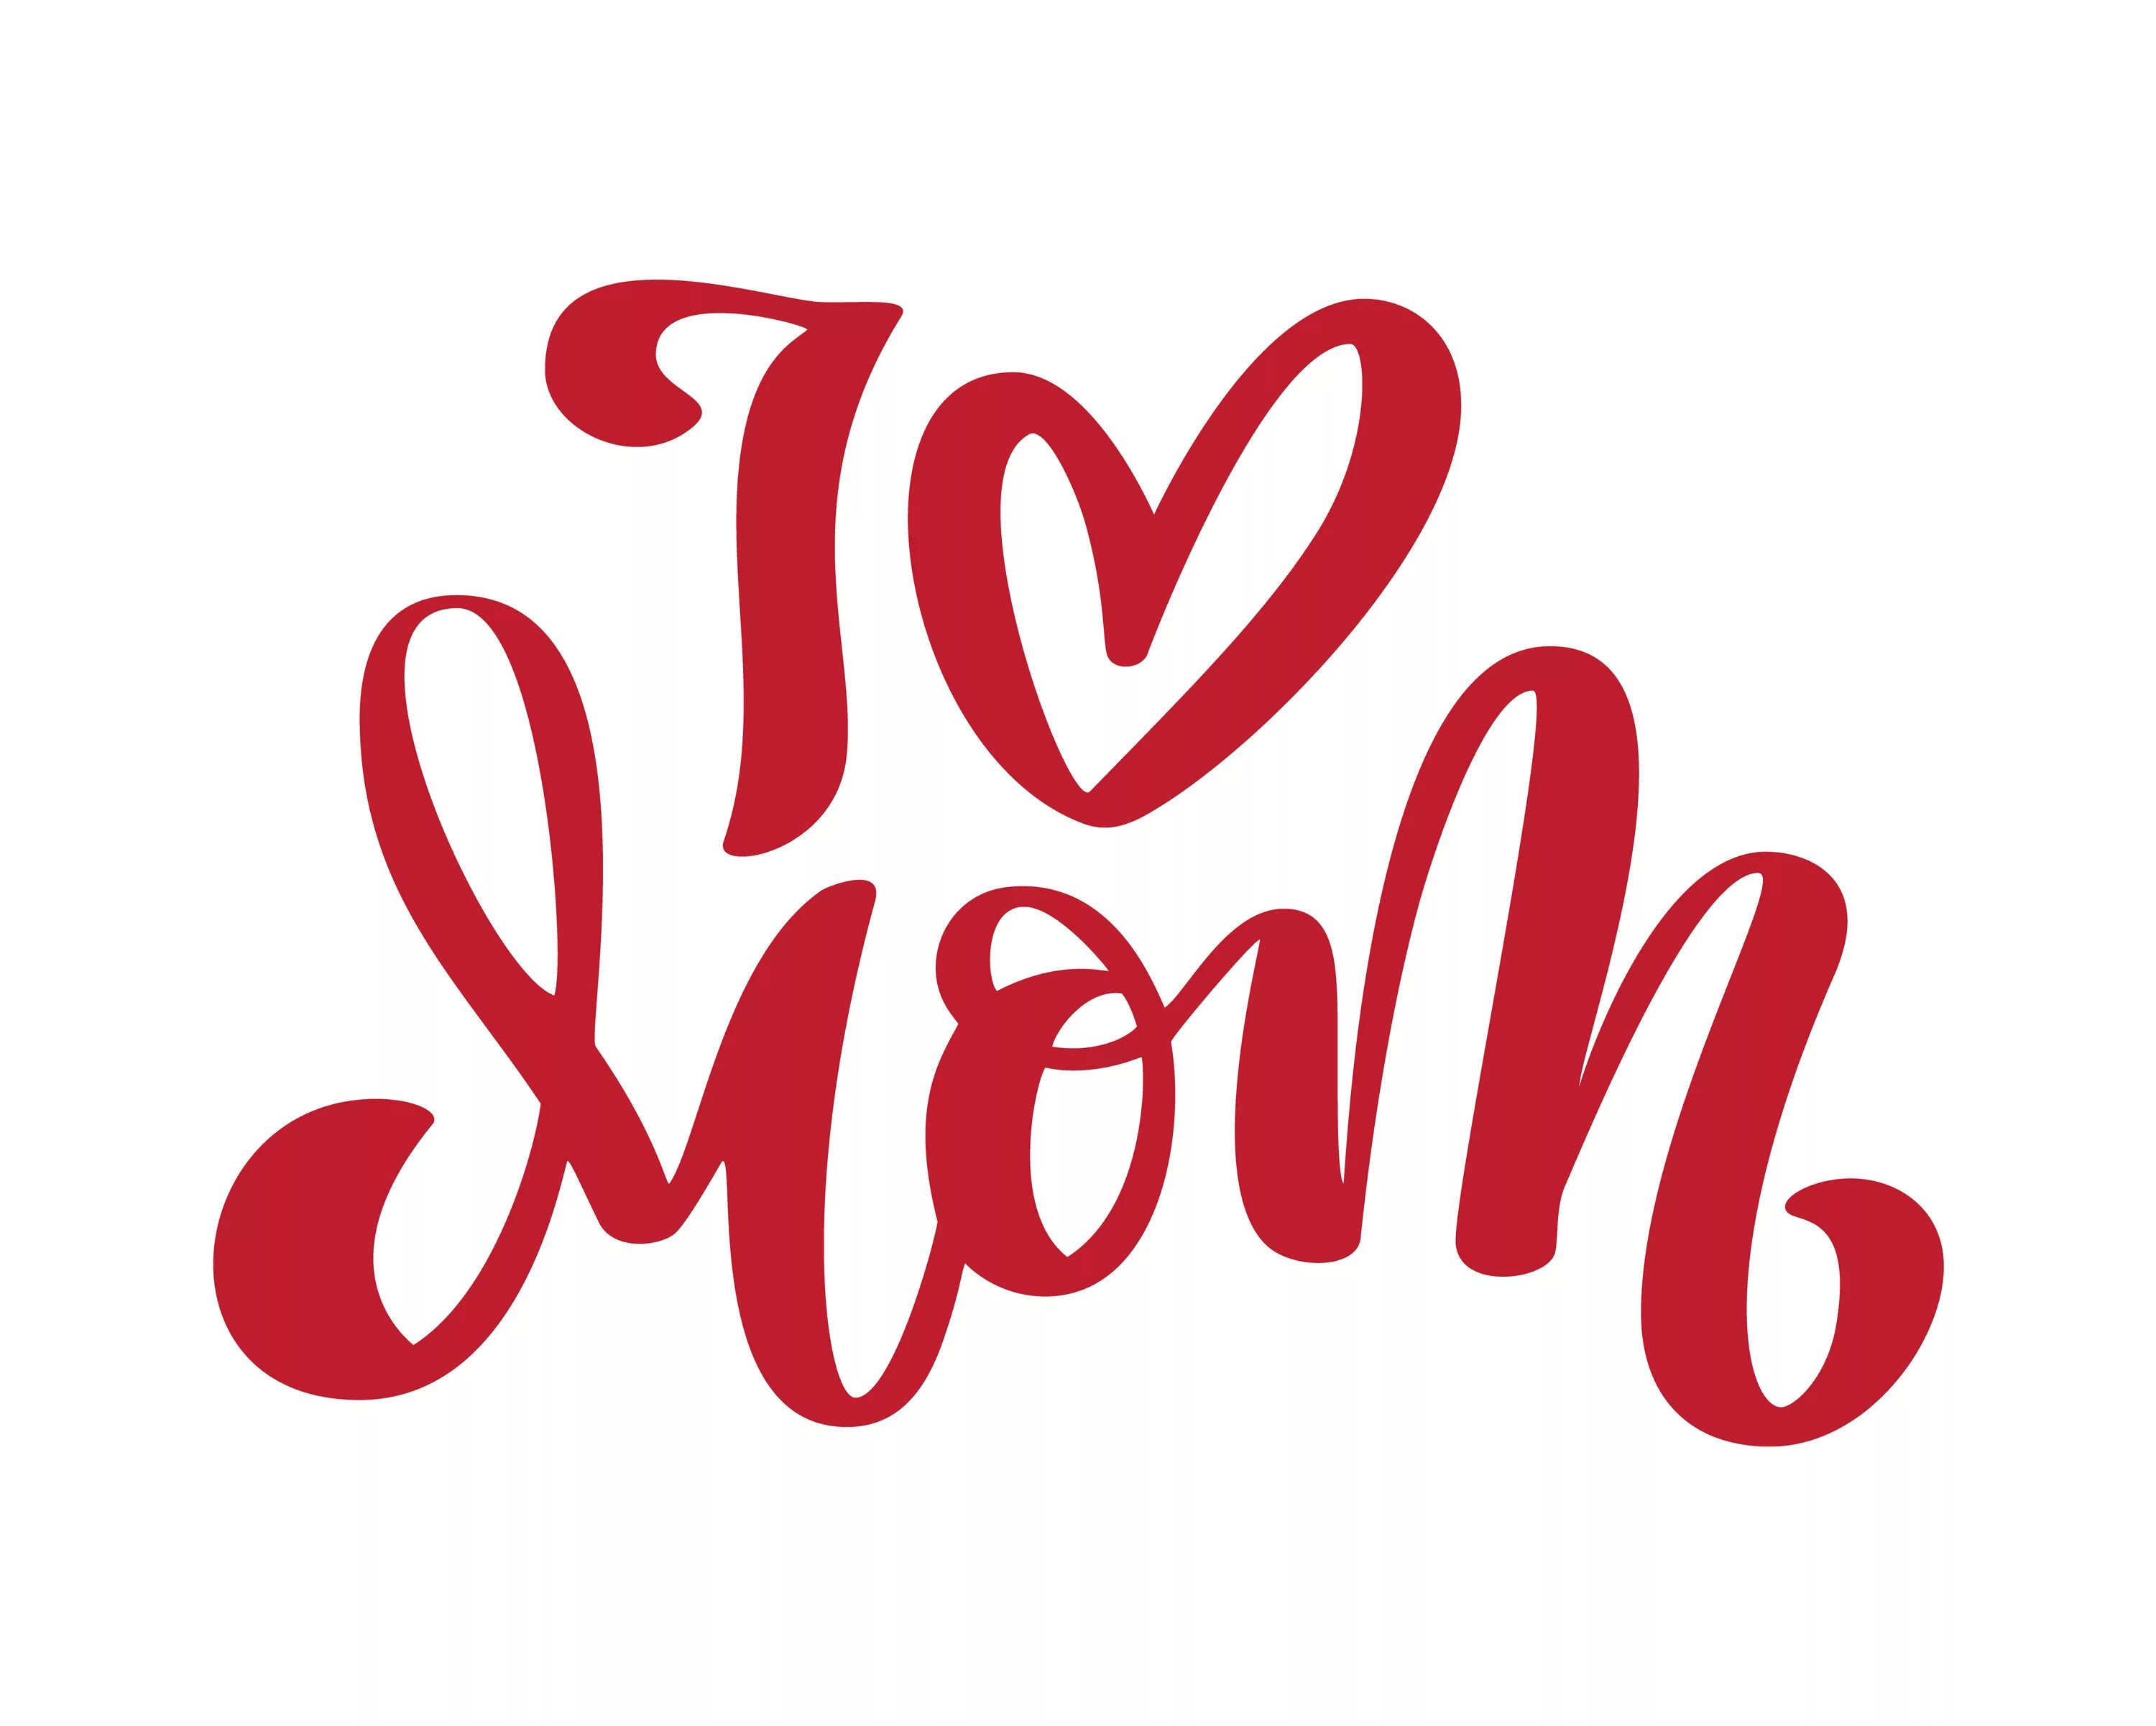 Му лове. Интересный шрифт для предложения i Love mom. Lettering mom. I Love mom шрифтом как от руки. Mother Love Lettering.